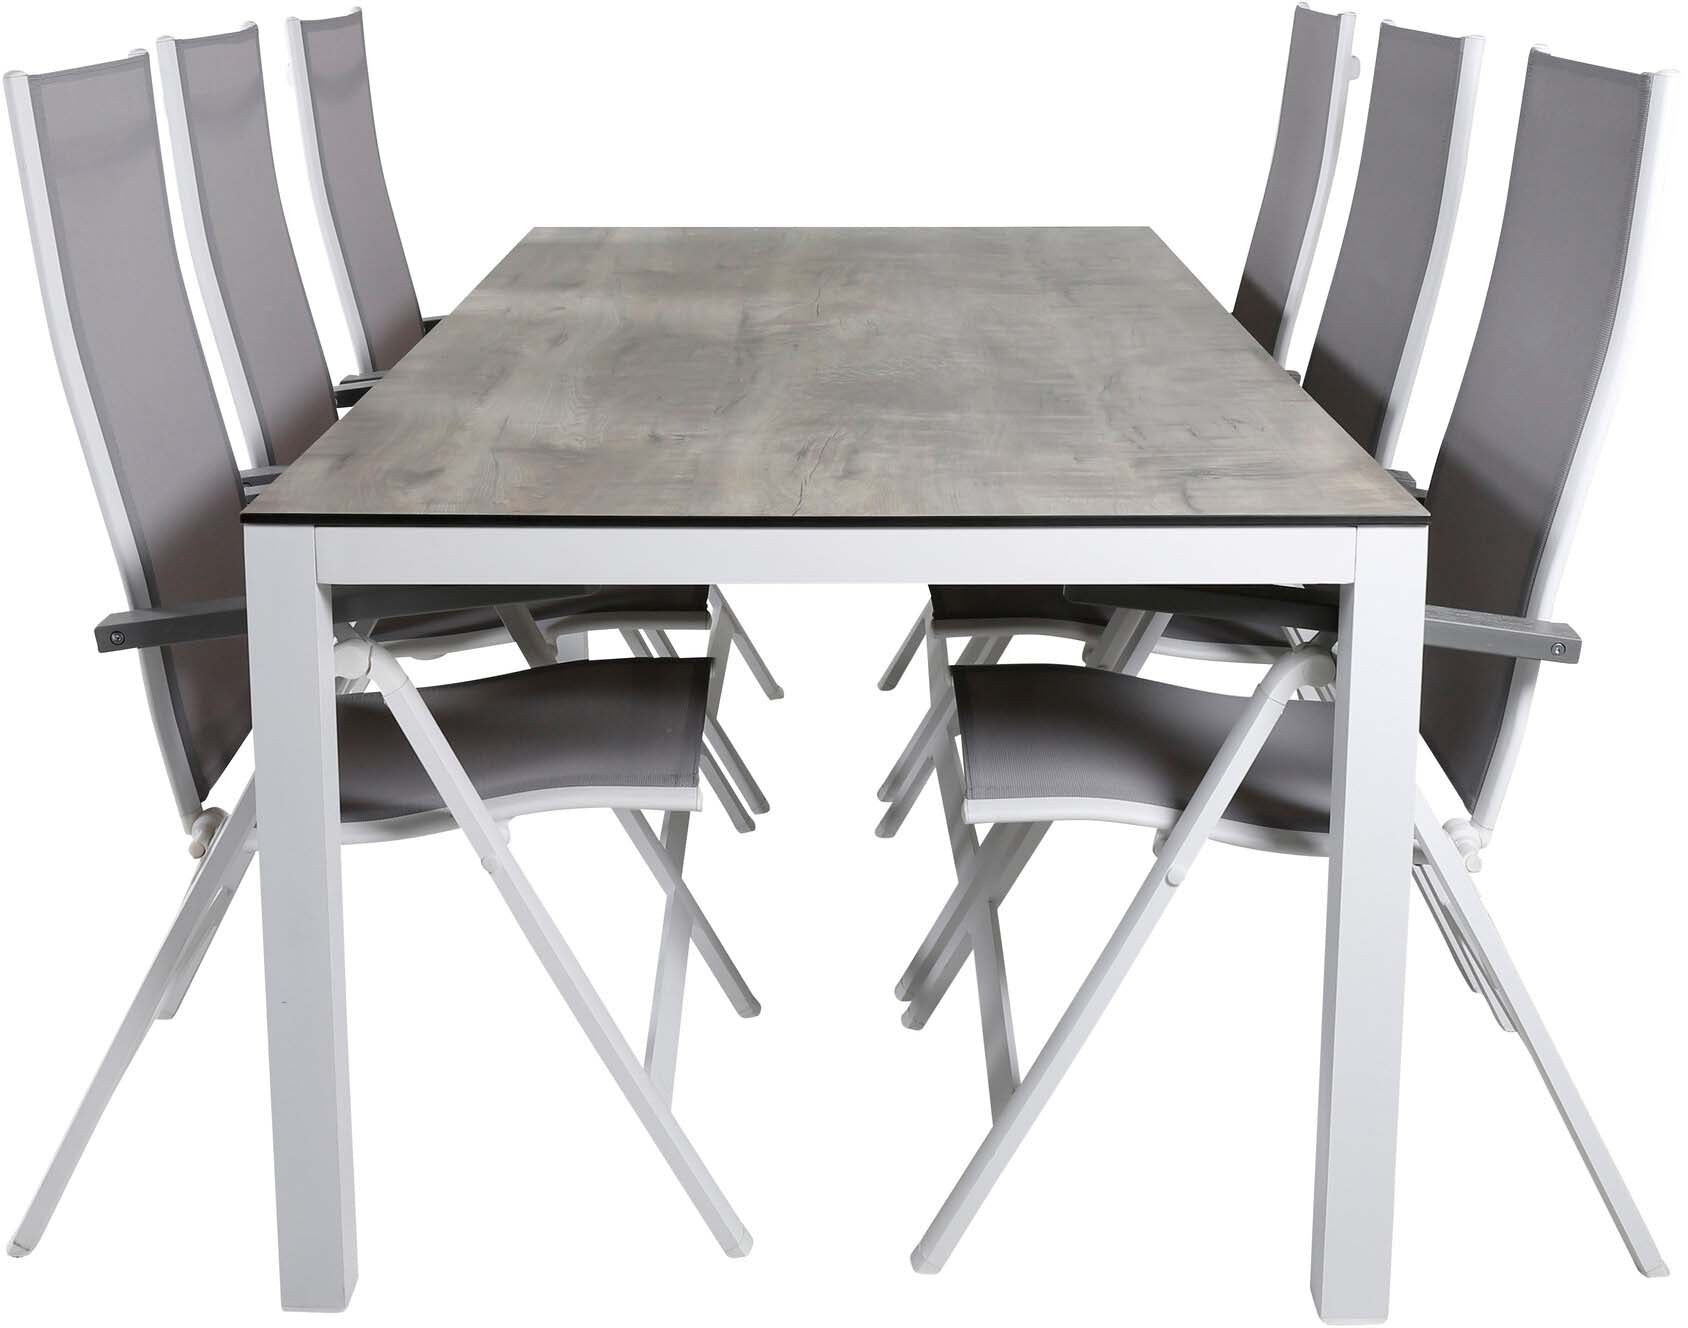 Llama Outdoor-Tischset + Albany 205cm/6St. in Dunkelbraun /Grau / Weiss präsentiert im Onlineshop von KAQTU Design AG. Gartentischset ist von Venture Home